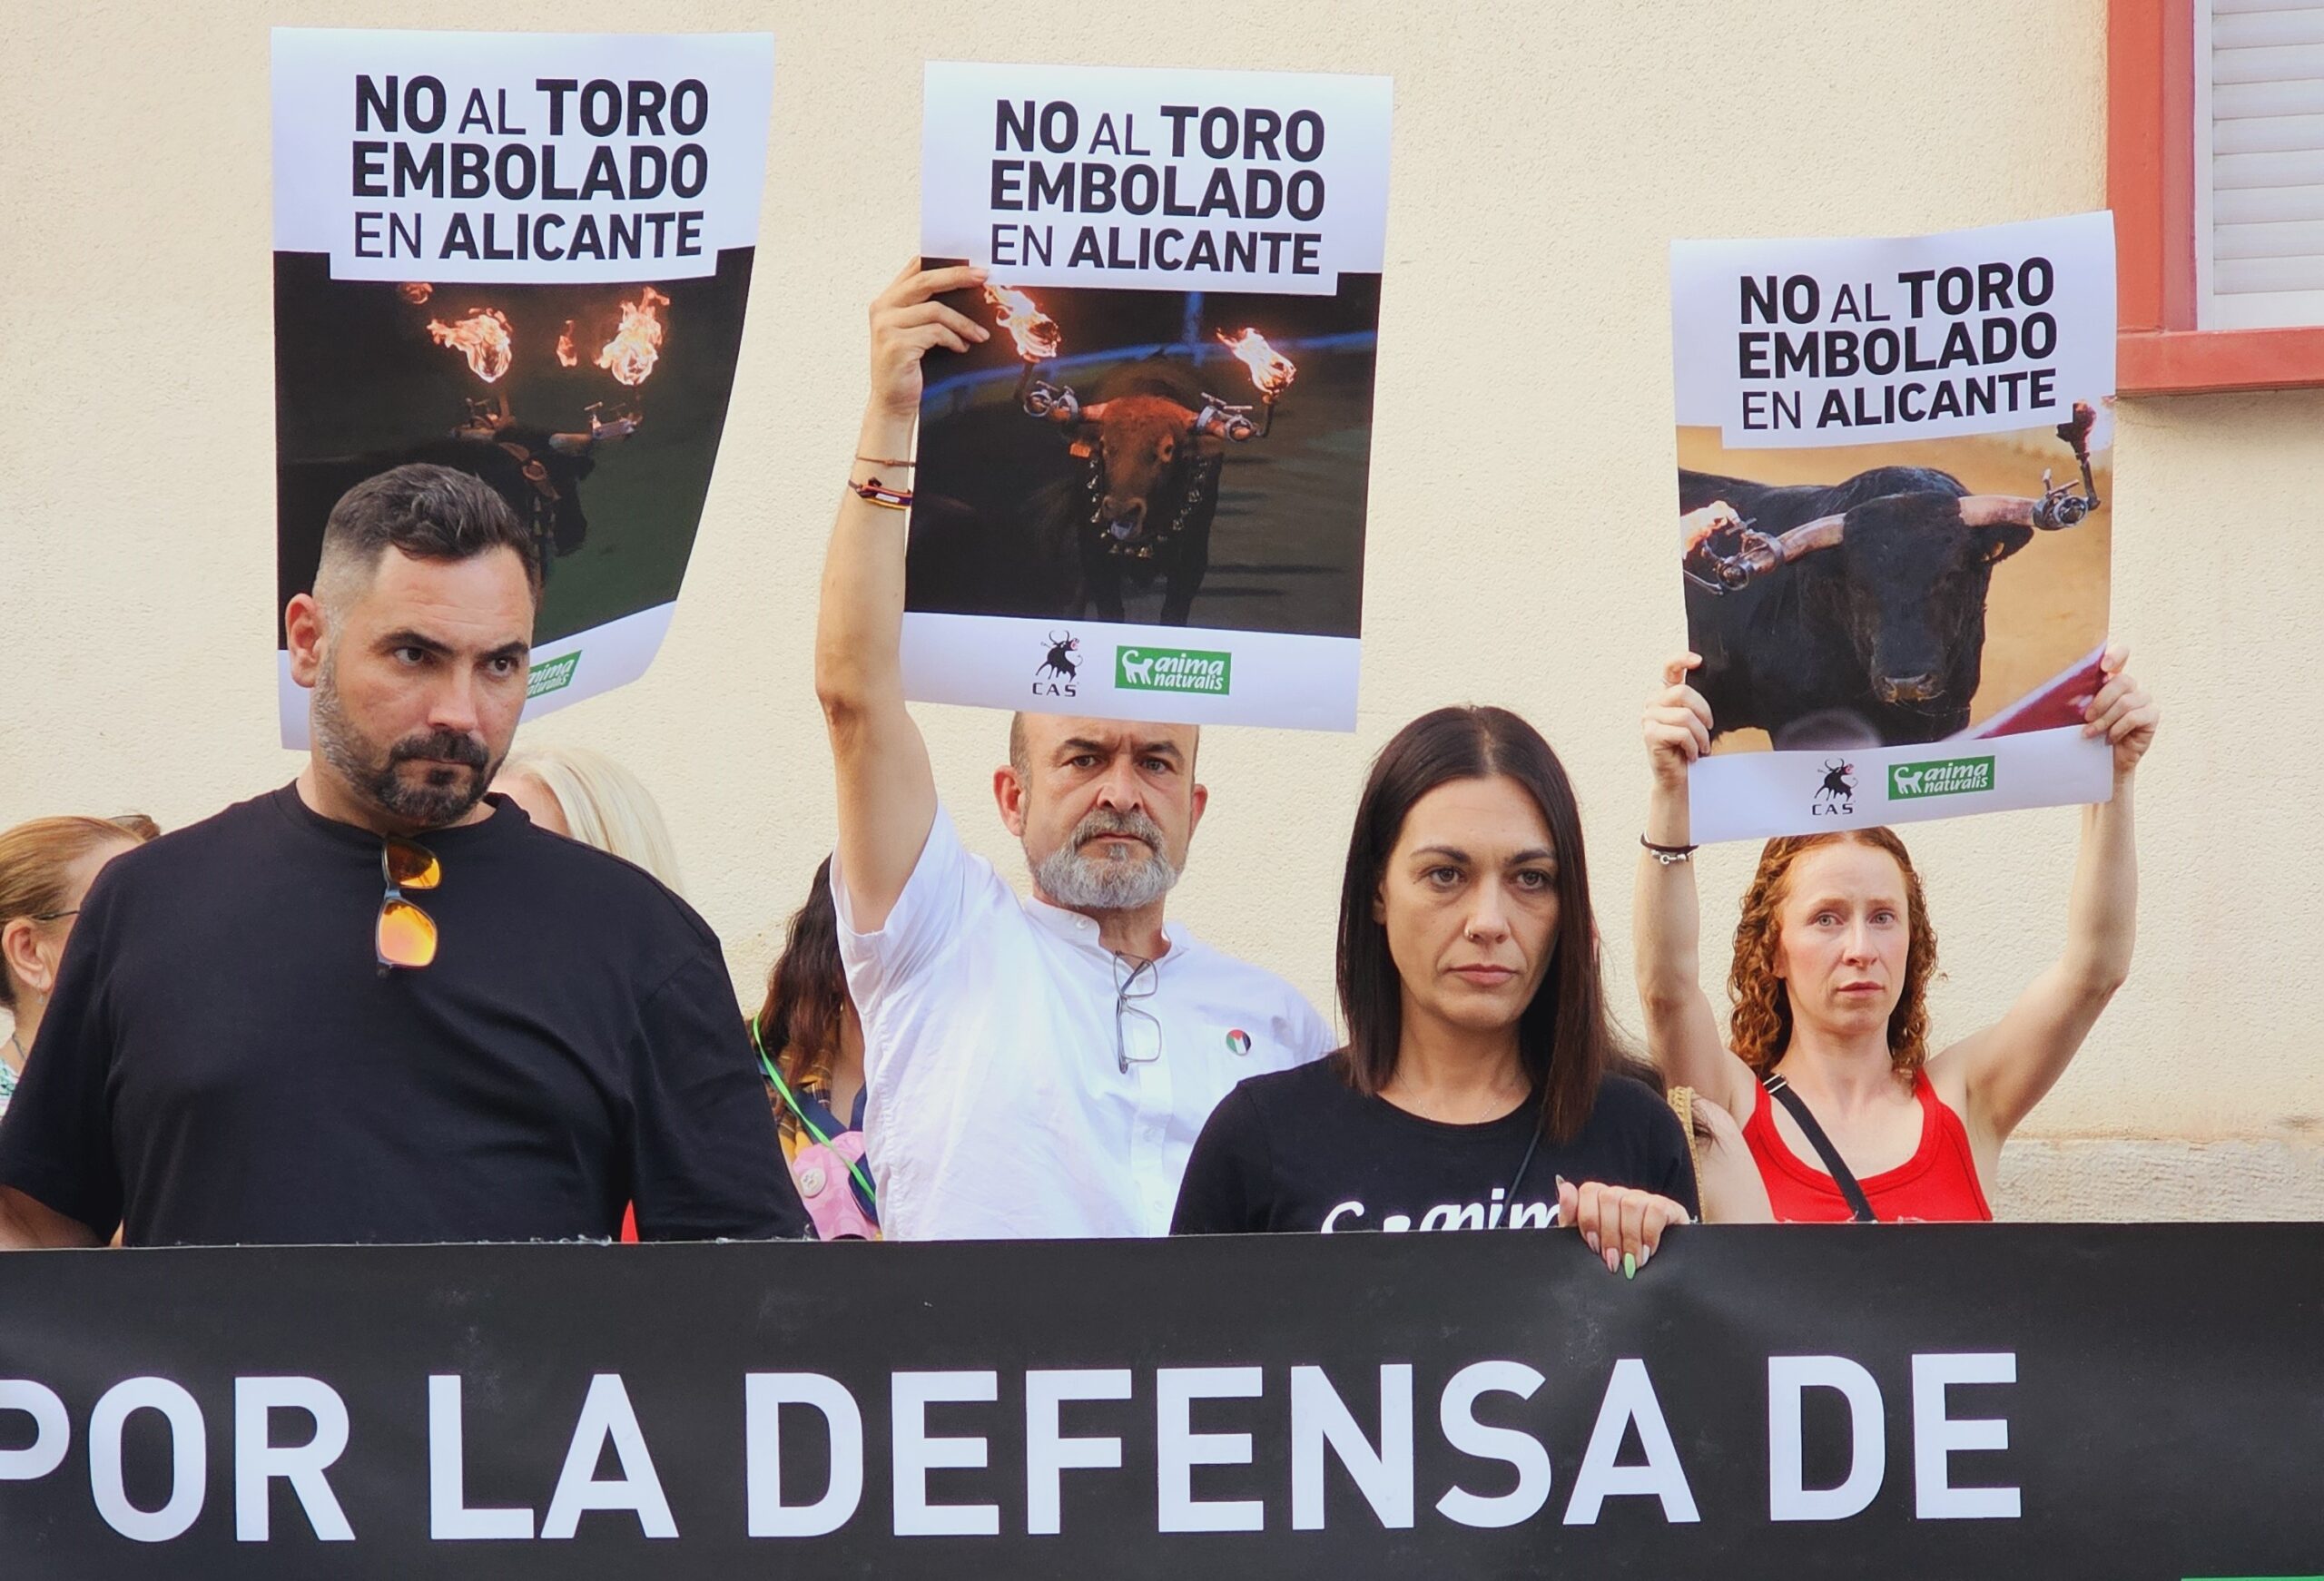 Protest in Alicante